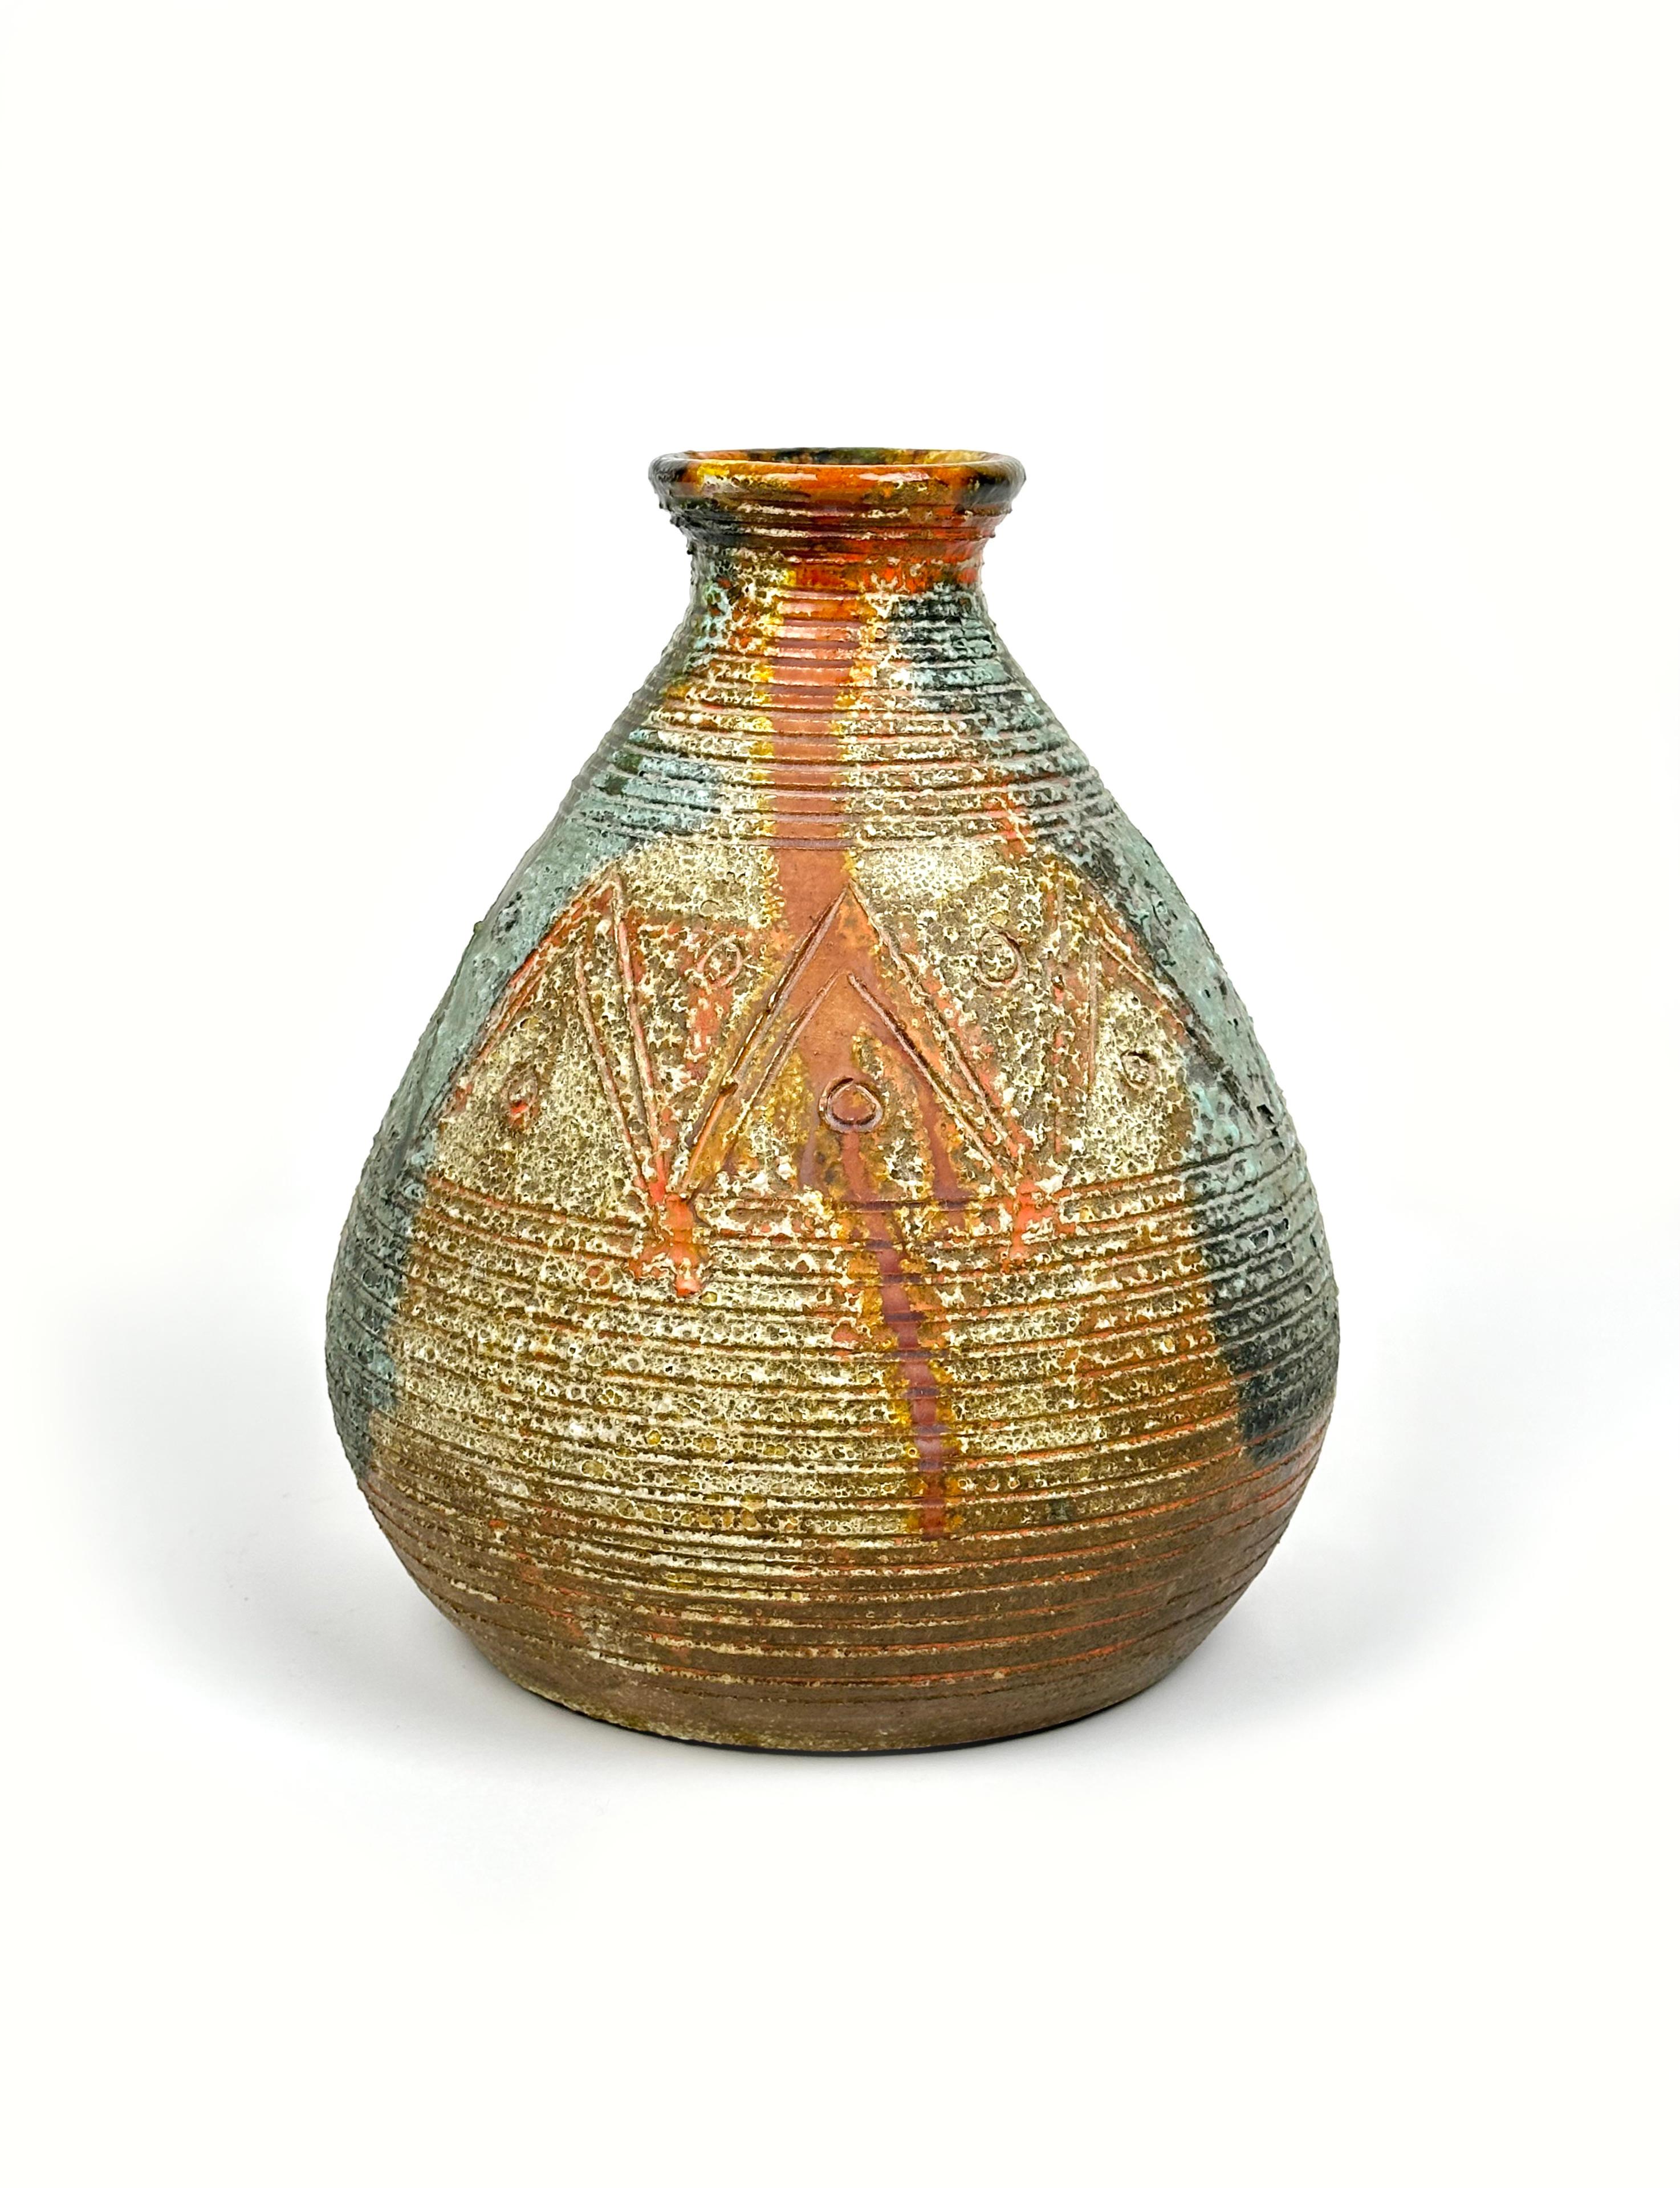 Ce splendide vase en céramique a été réalisé par le maître céramiste sarde Claudio Pulli. 

Fabriqué en Italie dans les années 1970.

Les œuvres de Claudio Pulli ont un procédé particulier de moulage de la céramique et sont uniques au monde.